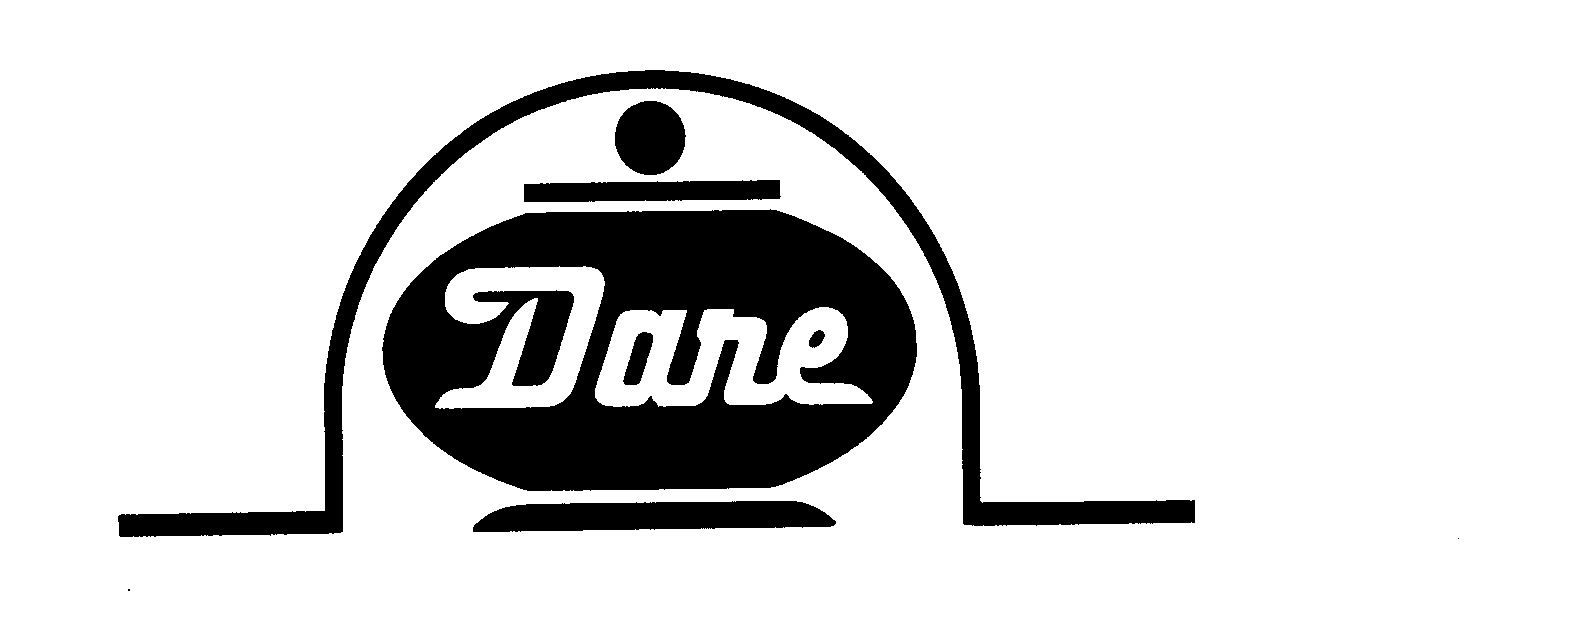 Trademark Logo DARE